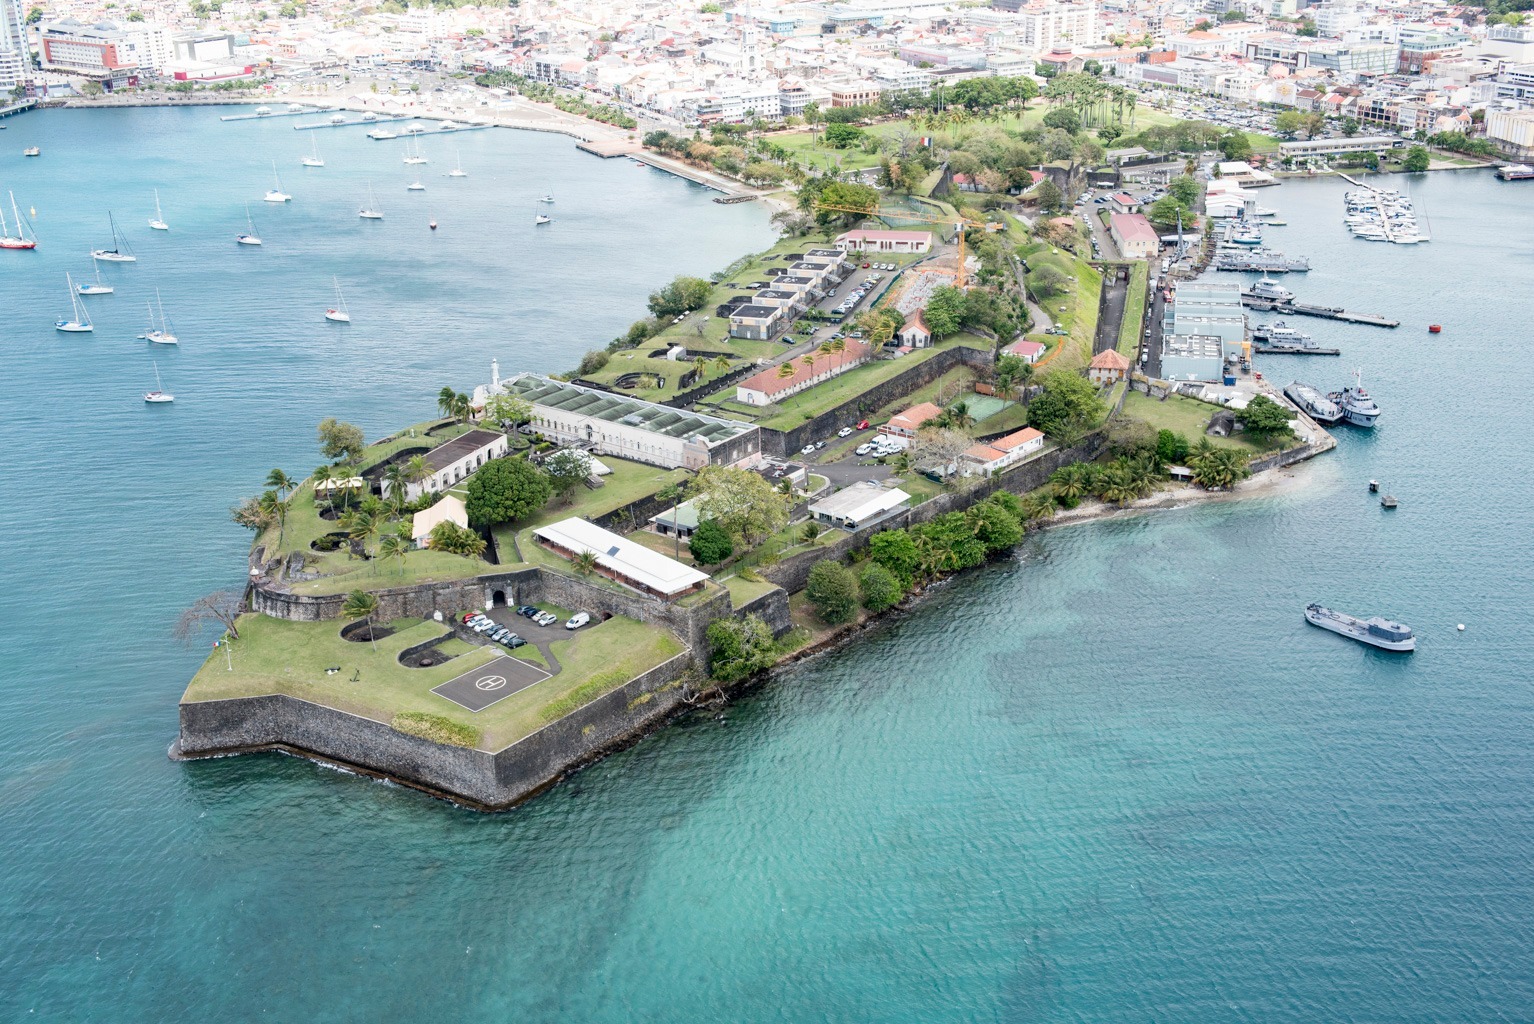     Le Fort Saint-Louis parmi les 14 finalistes du monument préféré des Français

